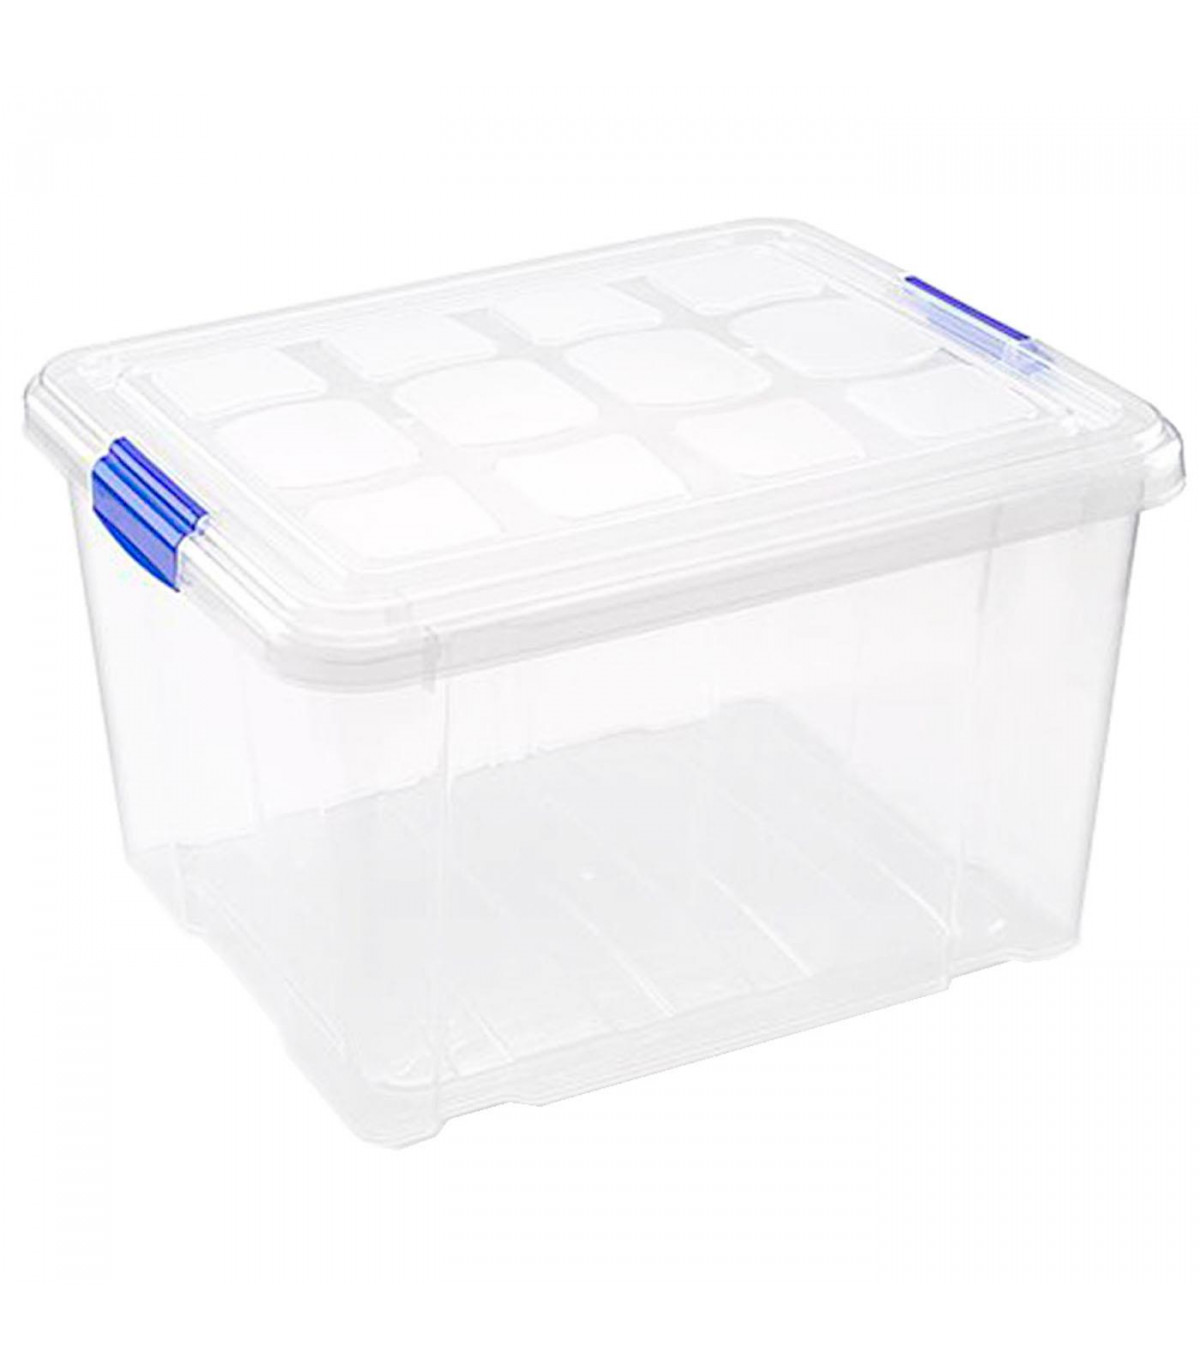 Tradineur - Caja almacenaje plástico 25 litros. recipiente ordenación, almacenamiento 25,3 x 42,3 35 cm